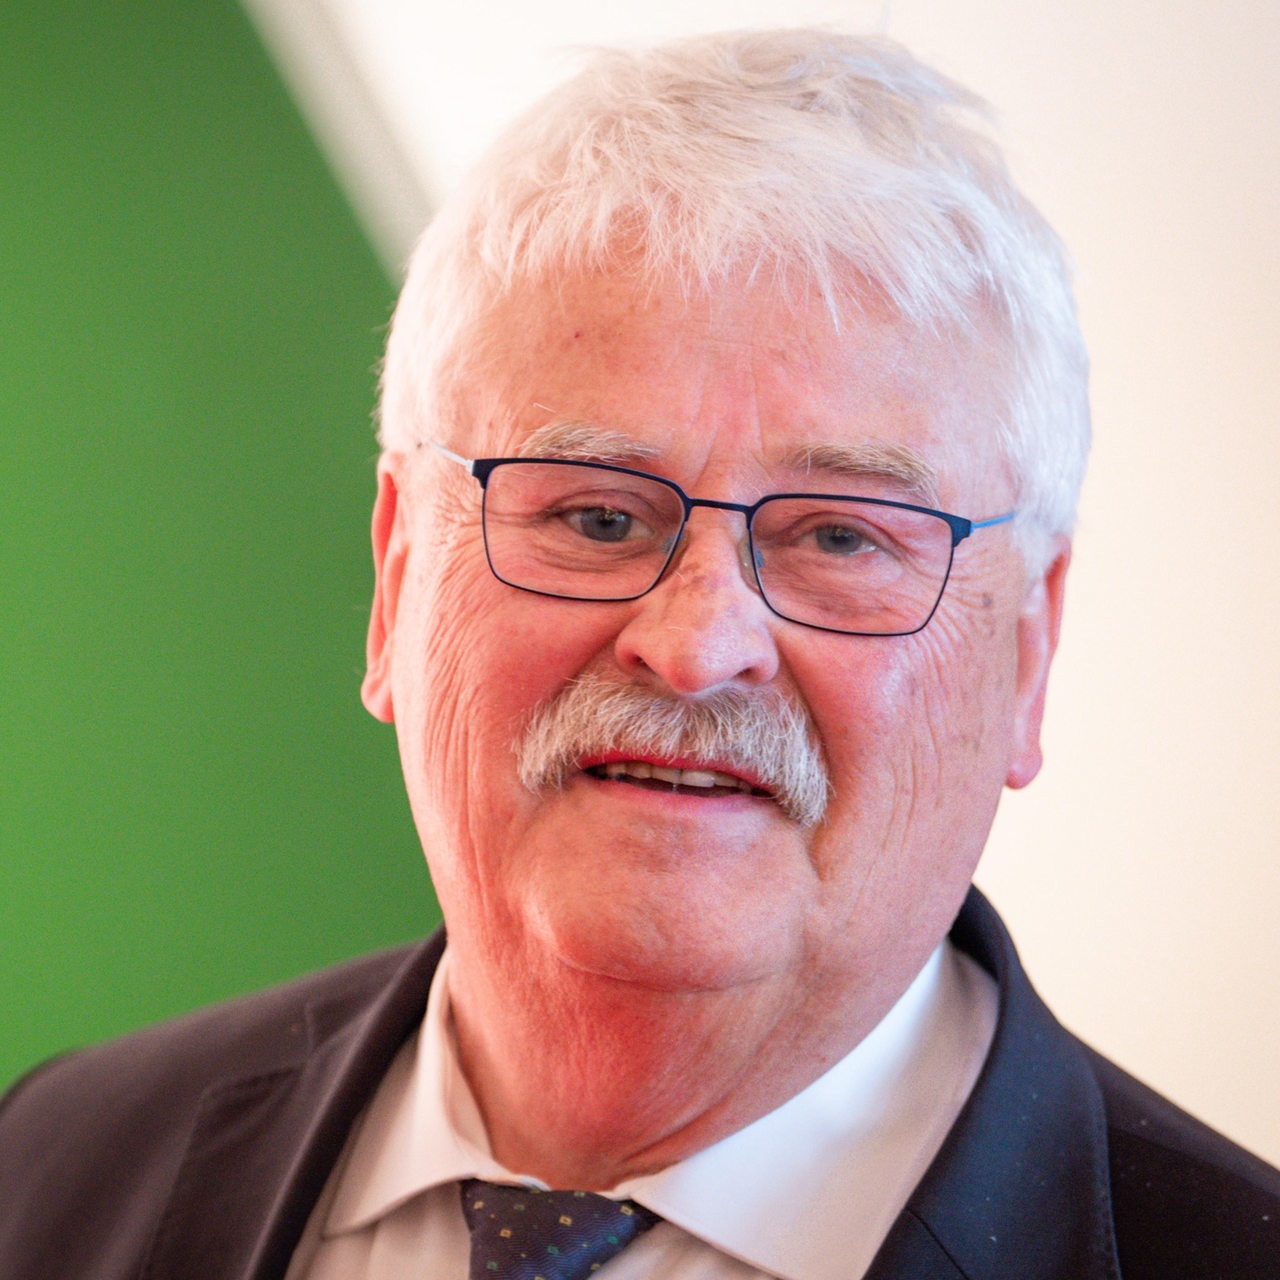 Elmar Brok im Mai 2023 bei der Verleihung des Staatspreises 2023 von NRW an die Bundeskanzlerin a.D.